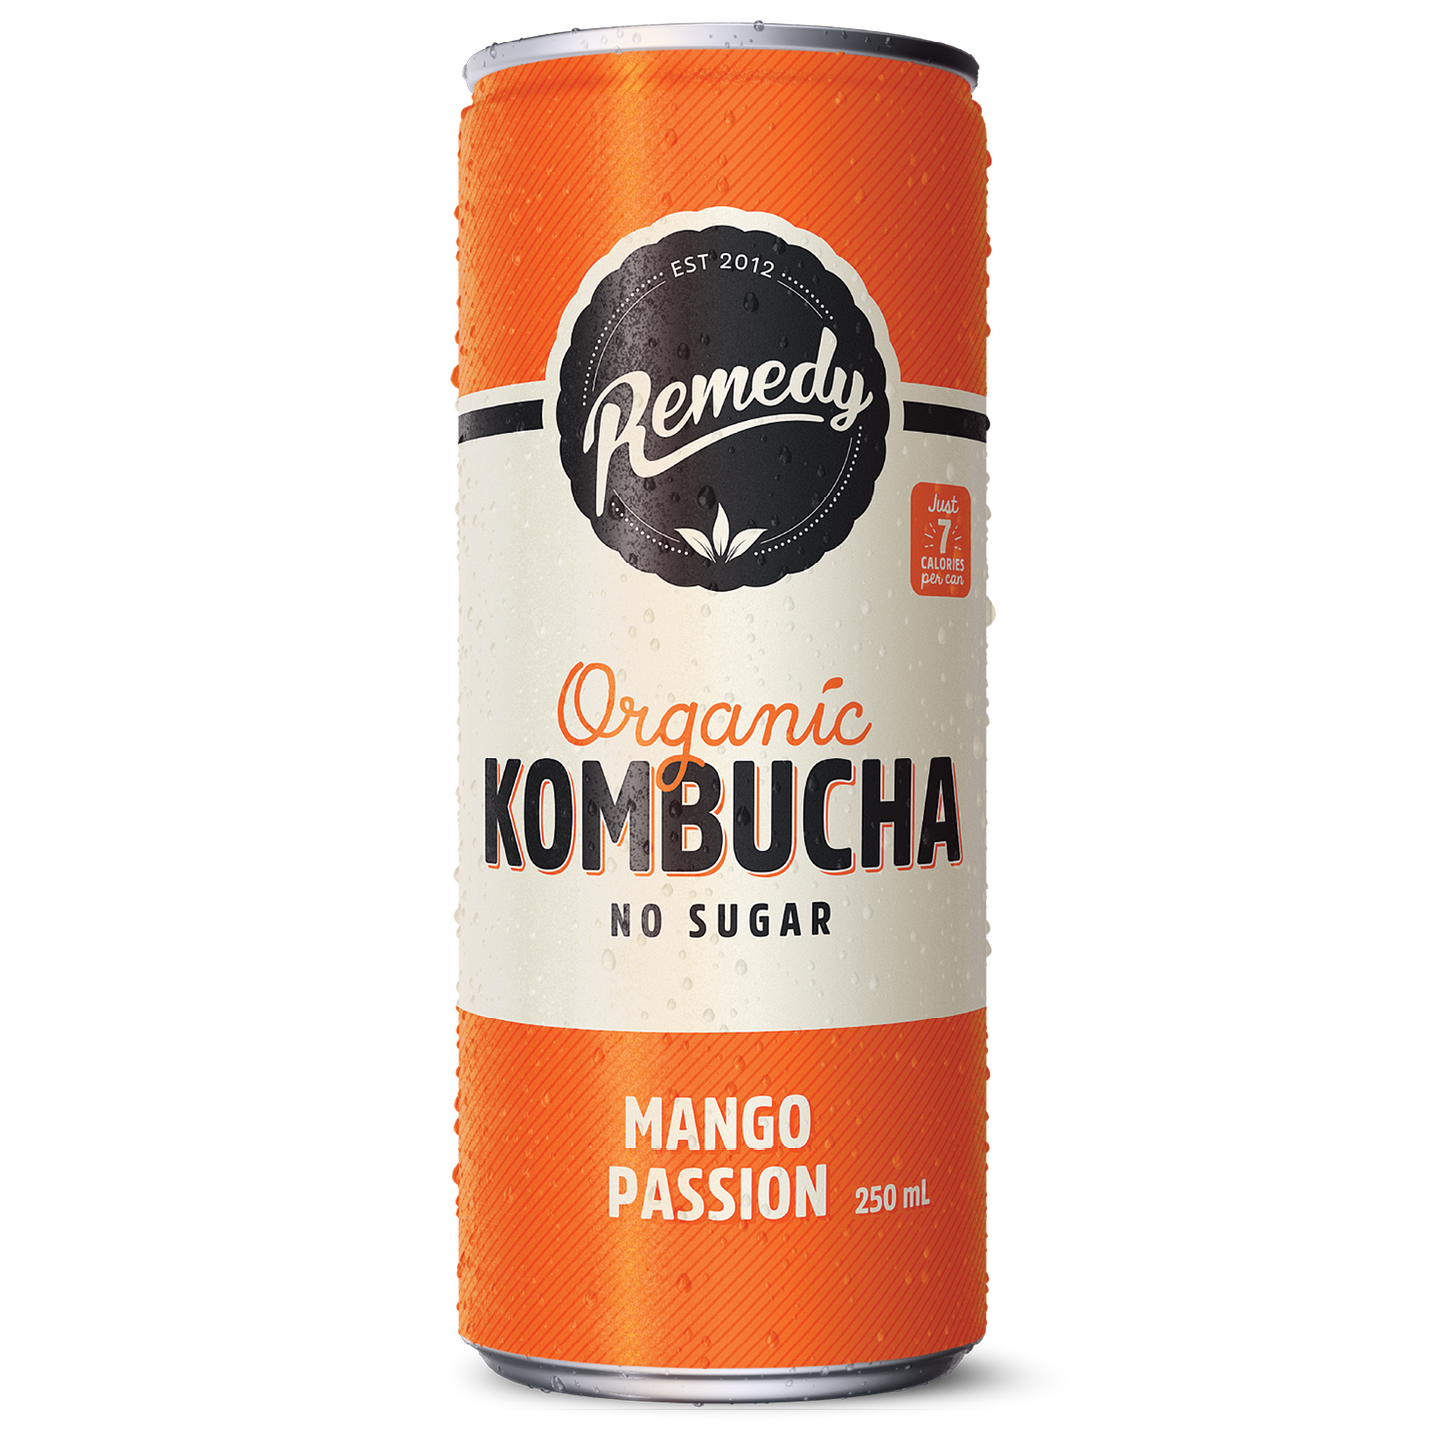 Remedy Kombucha Mango Passion